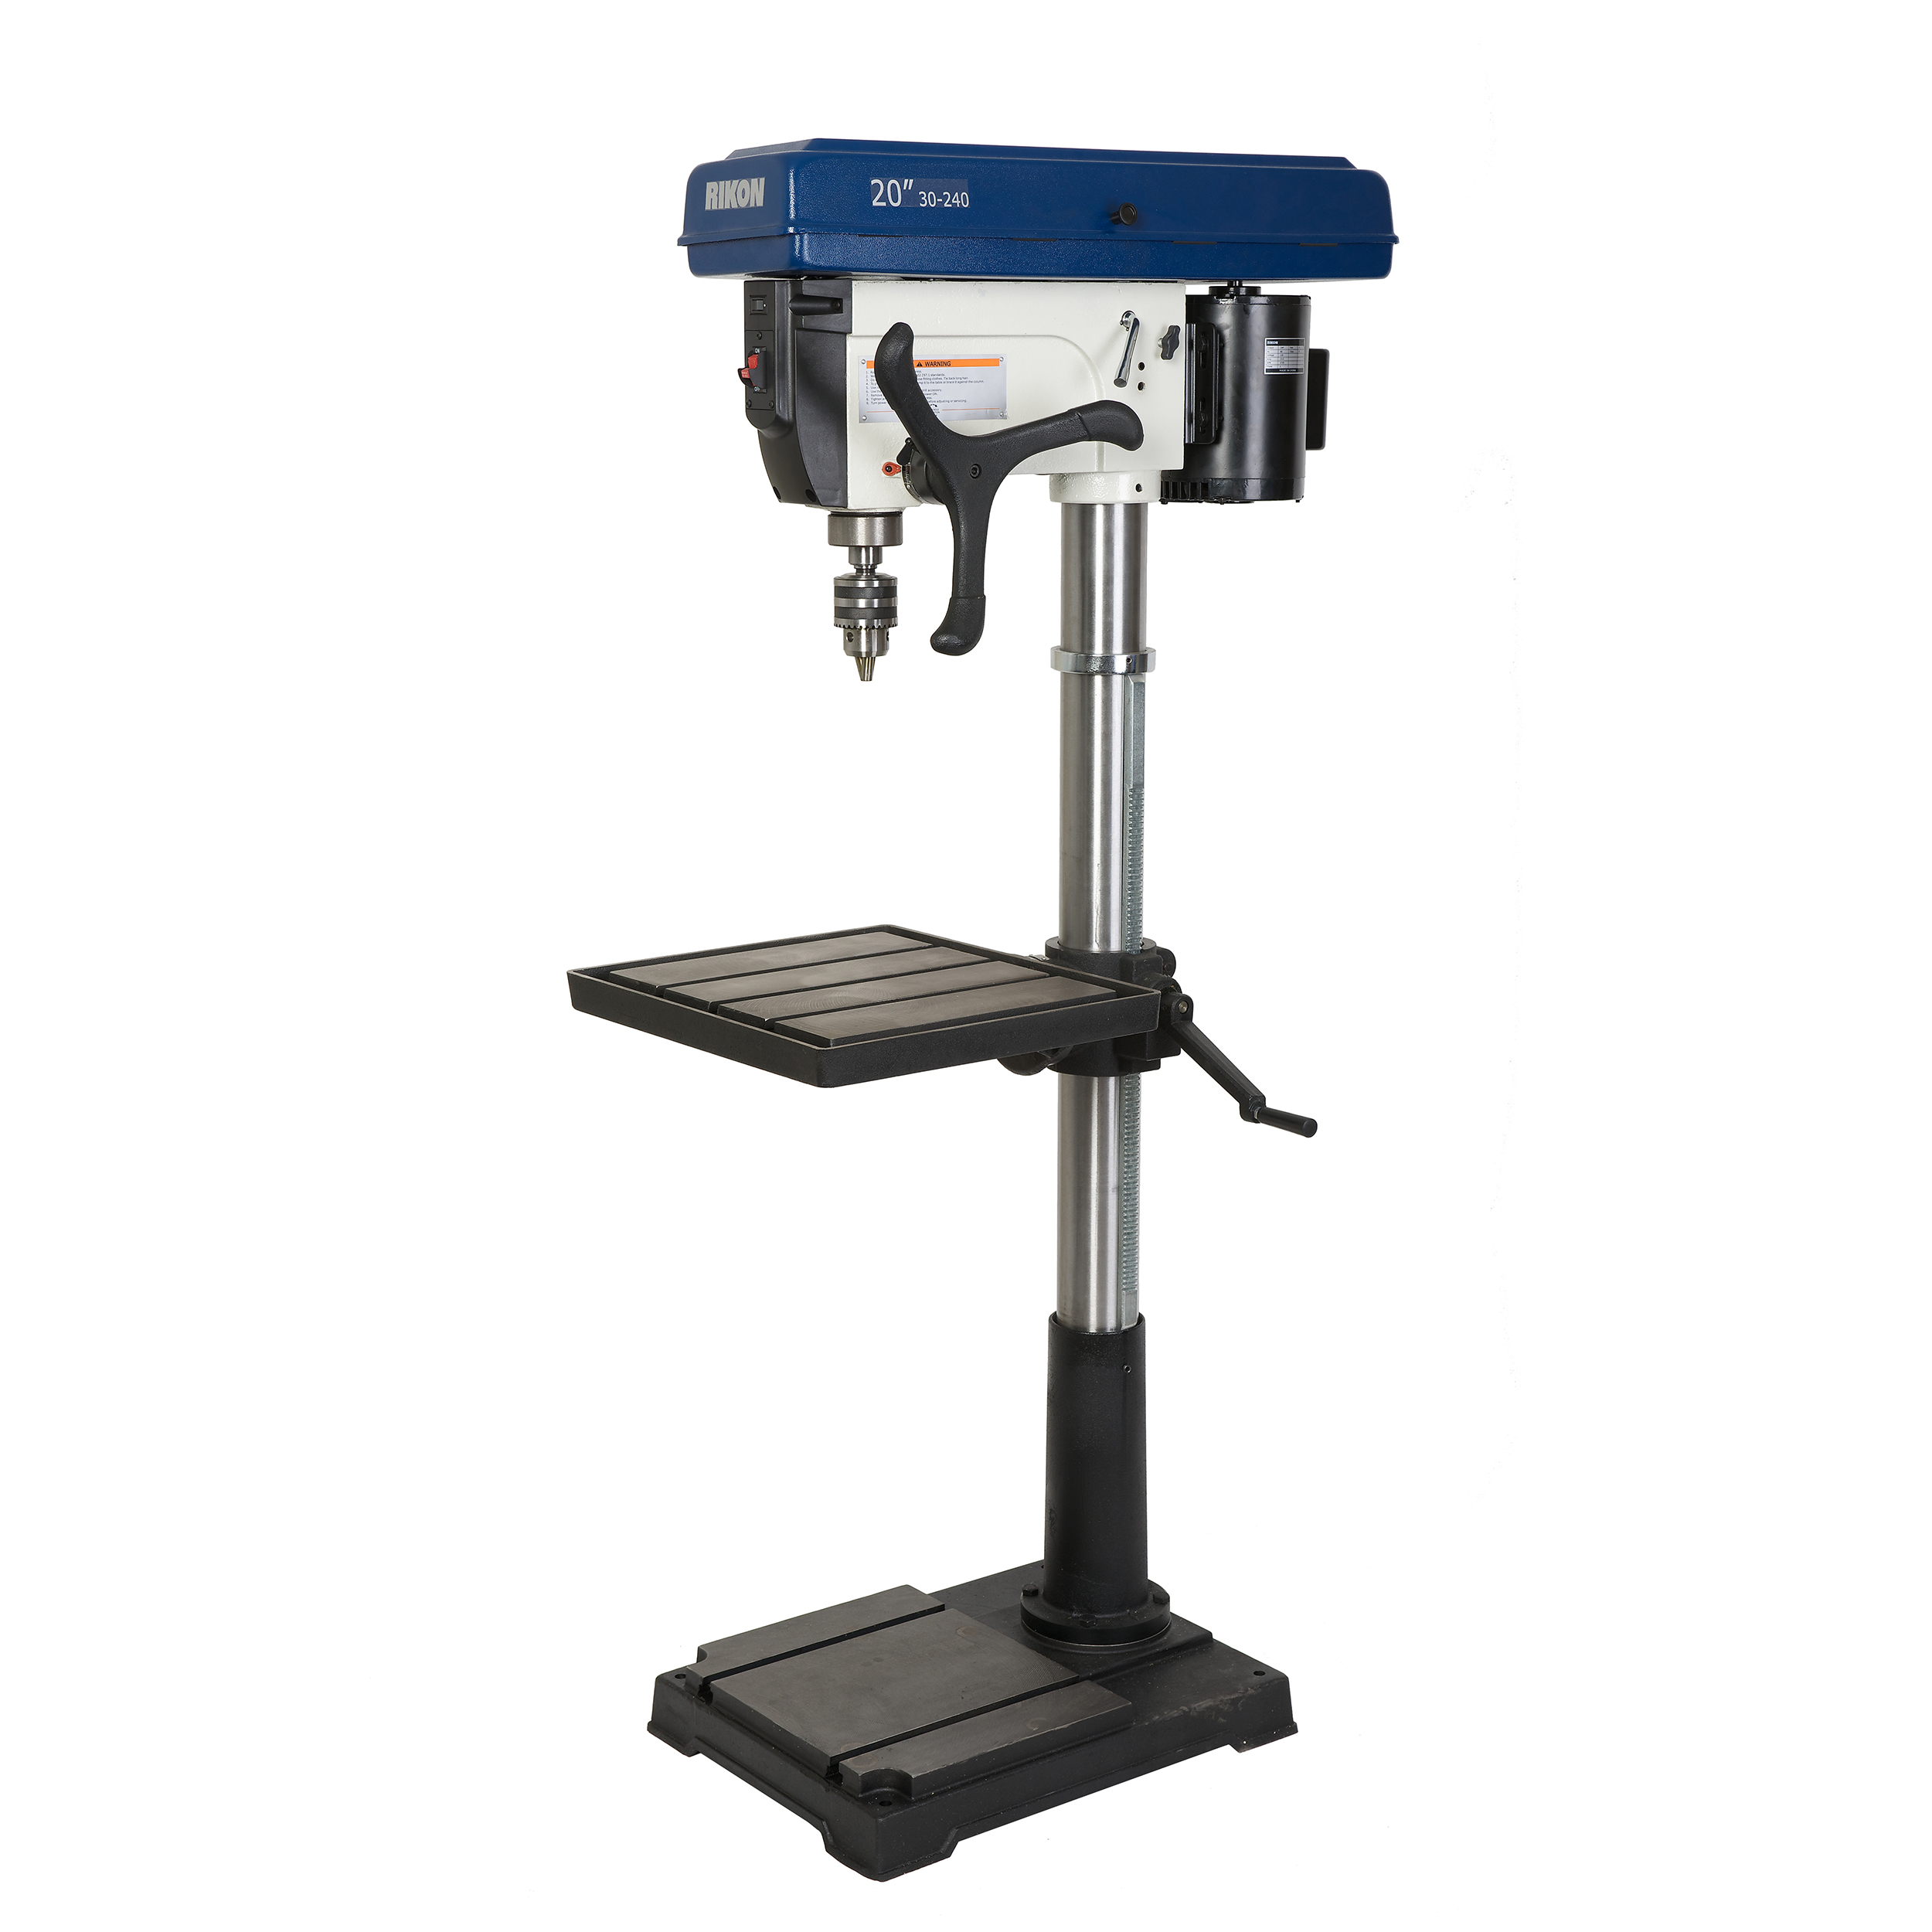 20" Floor Drill Press, Model 30-240